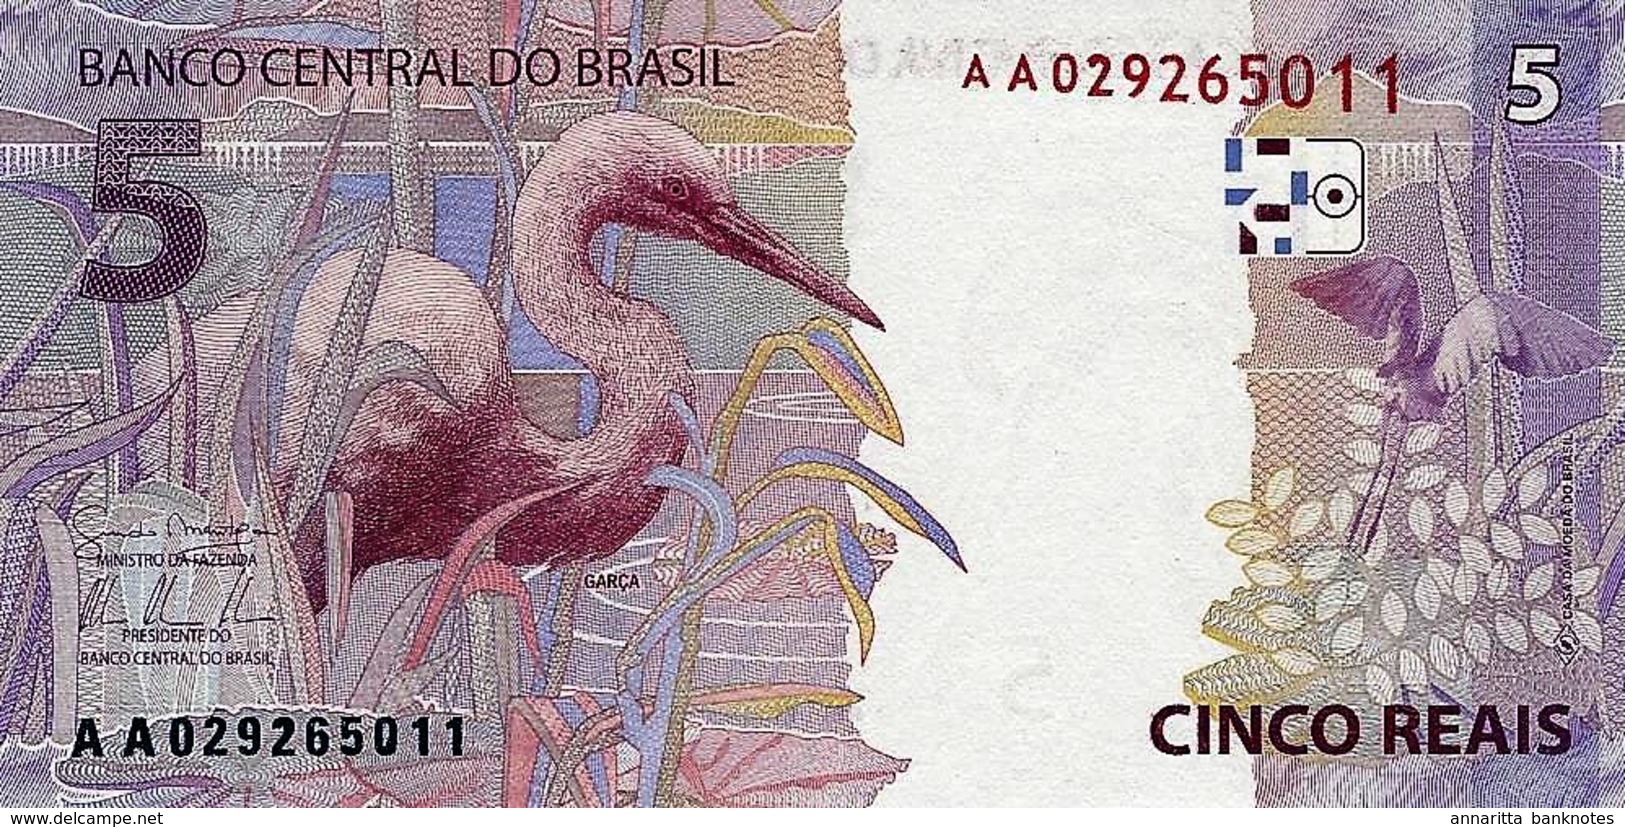 BRAZIL 5 REAIS 2010 (2013) P-253 UNC PREFIX AA [BR875a] - Brazil